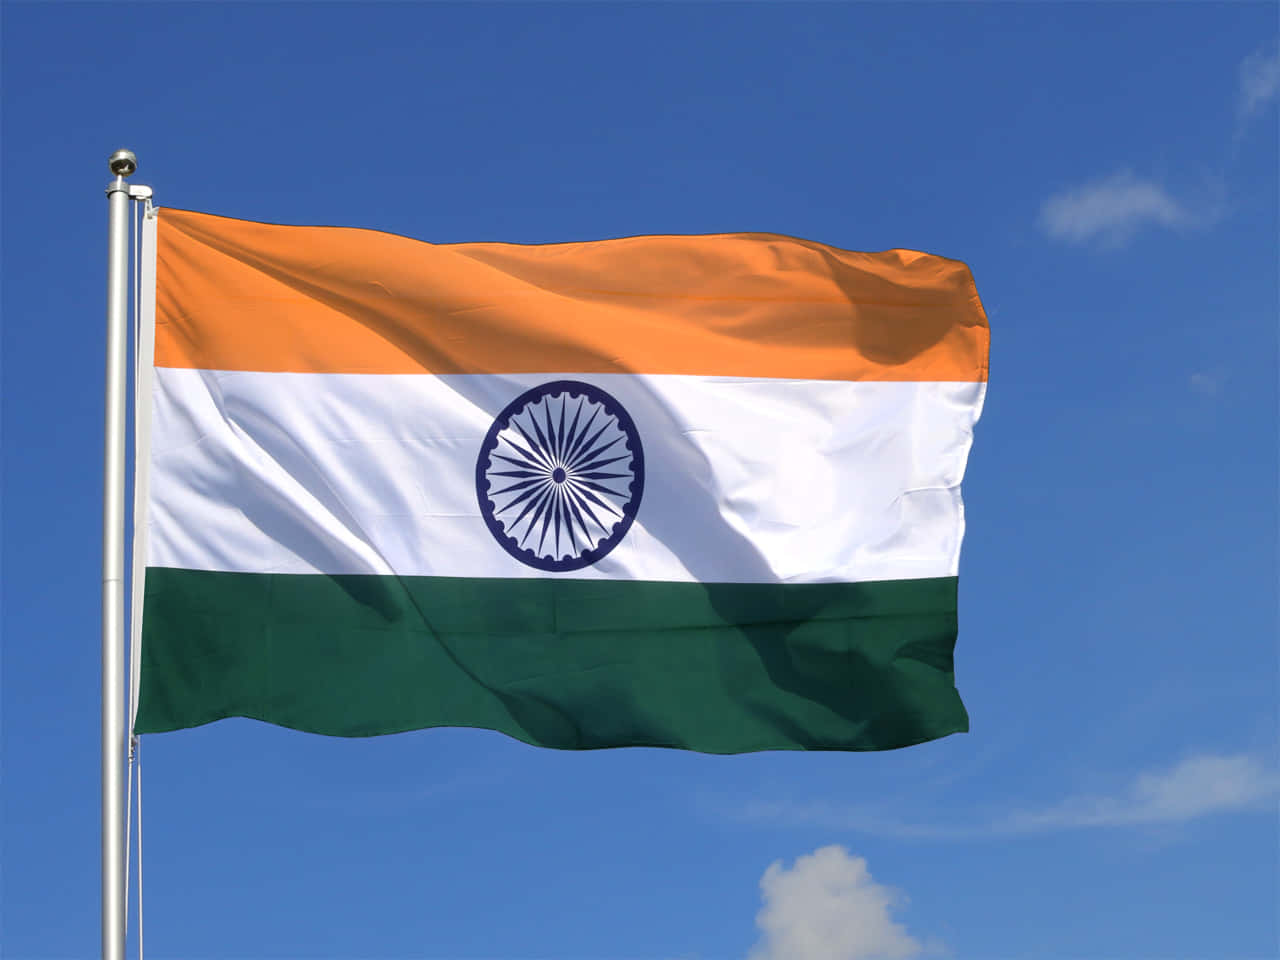 Labandera Nacional De India - Representando La Unidad En La Diversidad